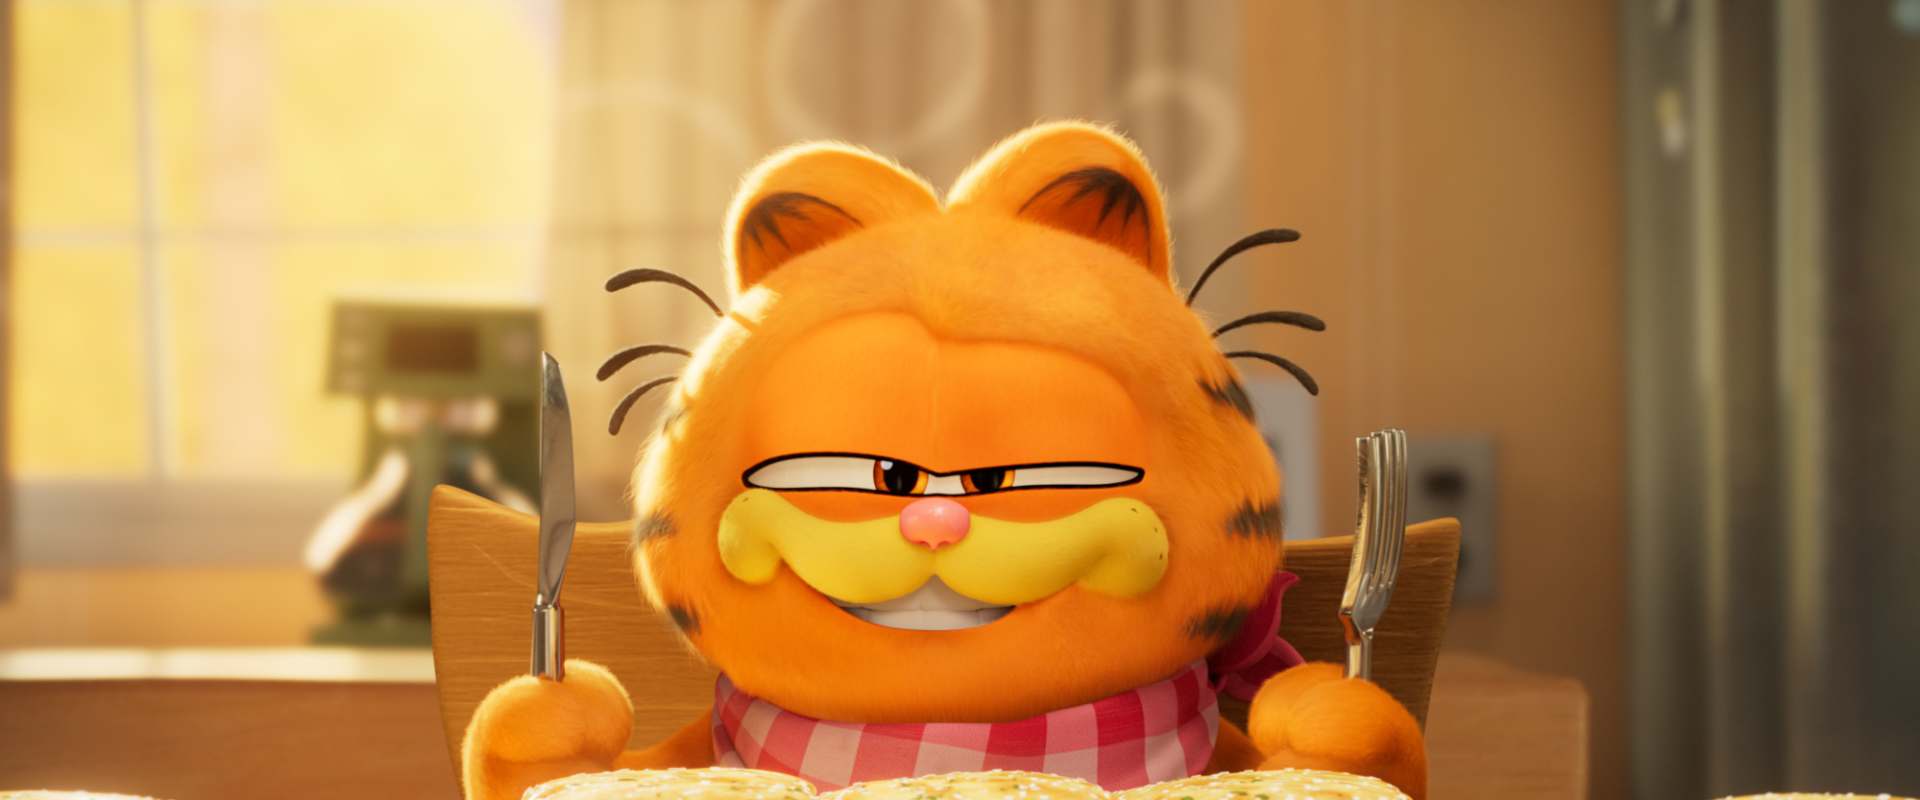 The Garfield Movie background 1